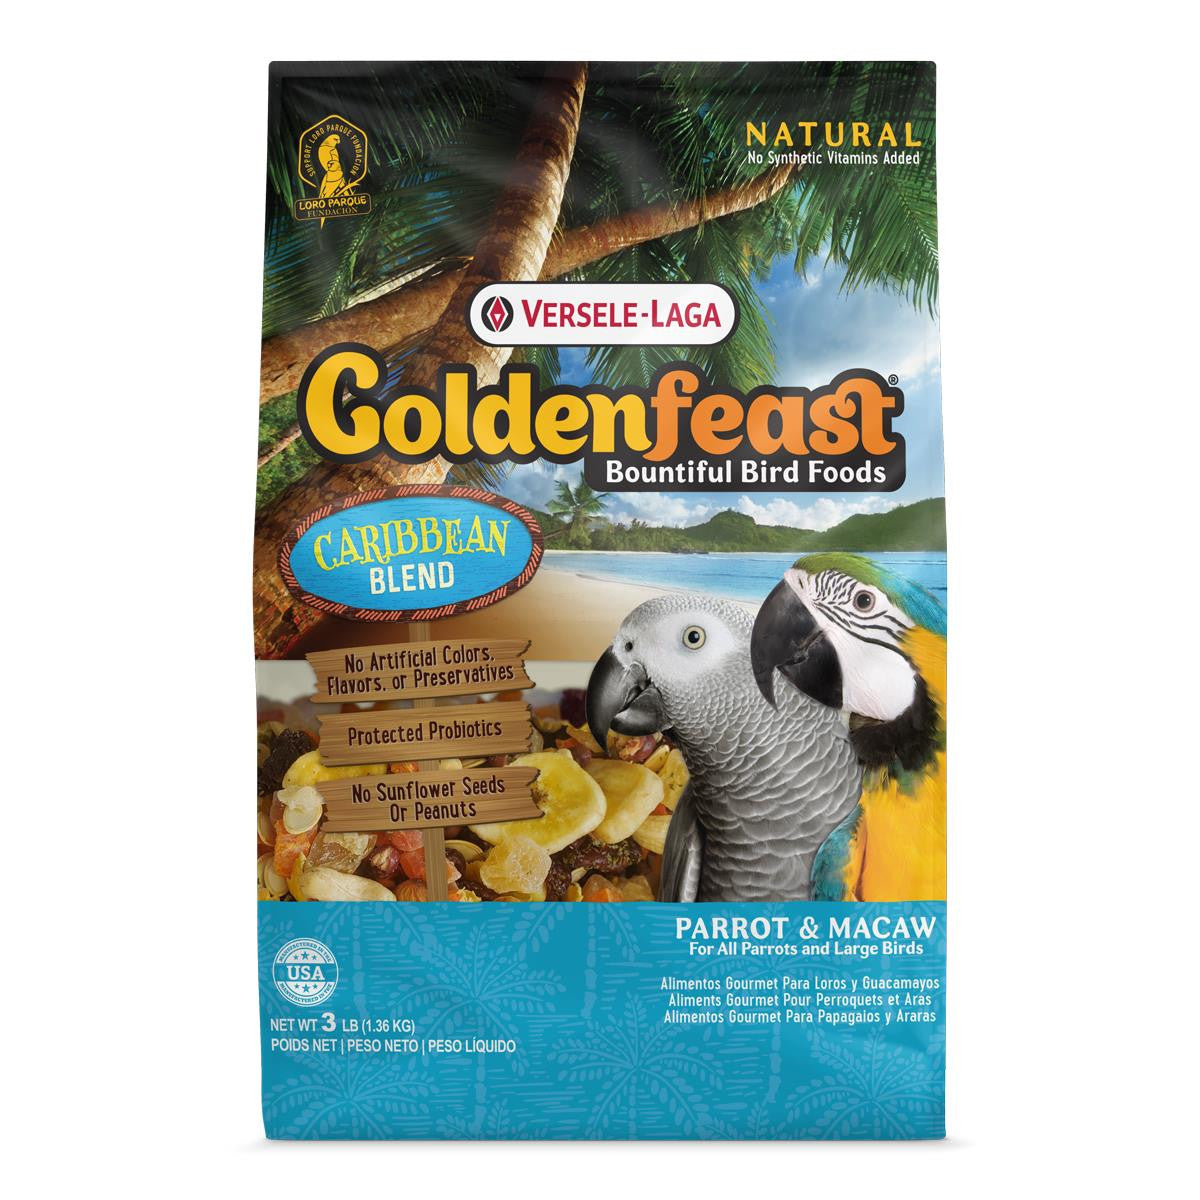 Goldenfeast Caribbean Blend Bird Food 6 / 3 lb 046706822454